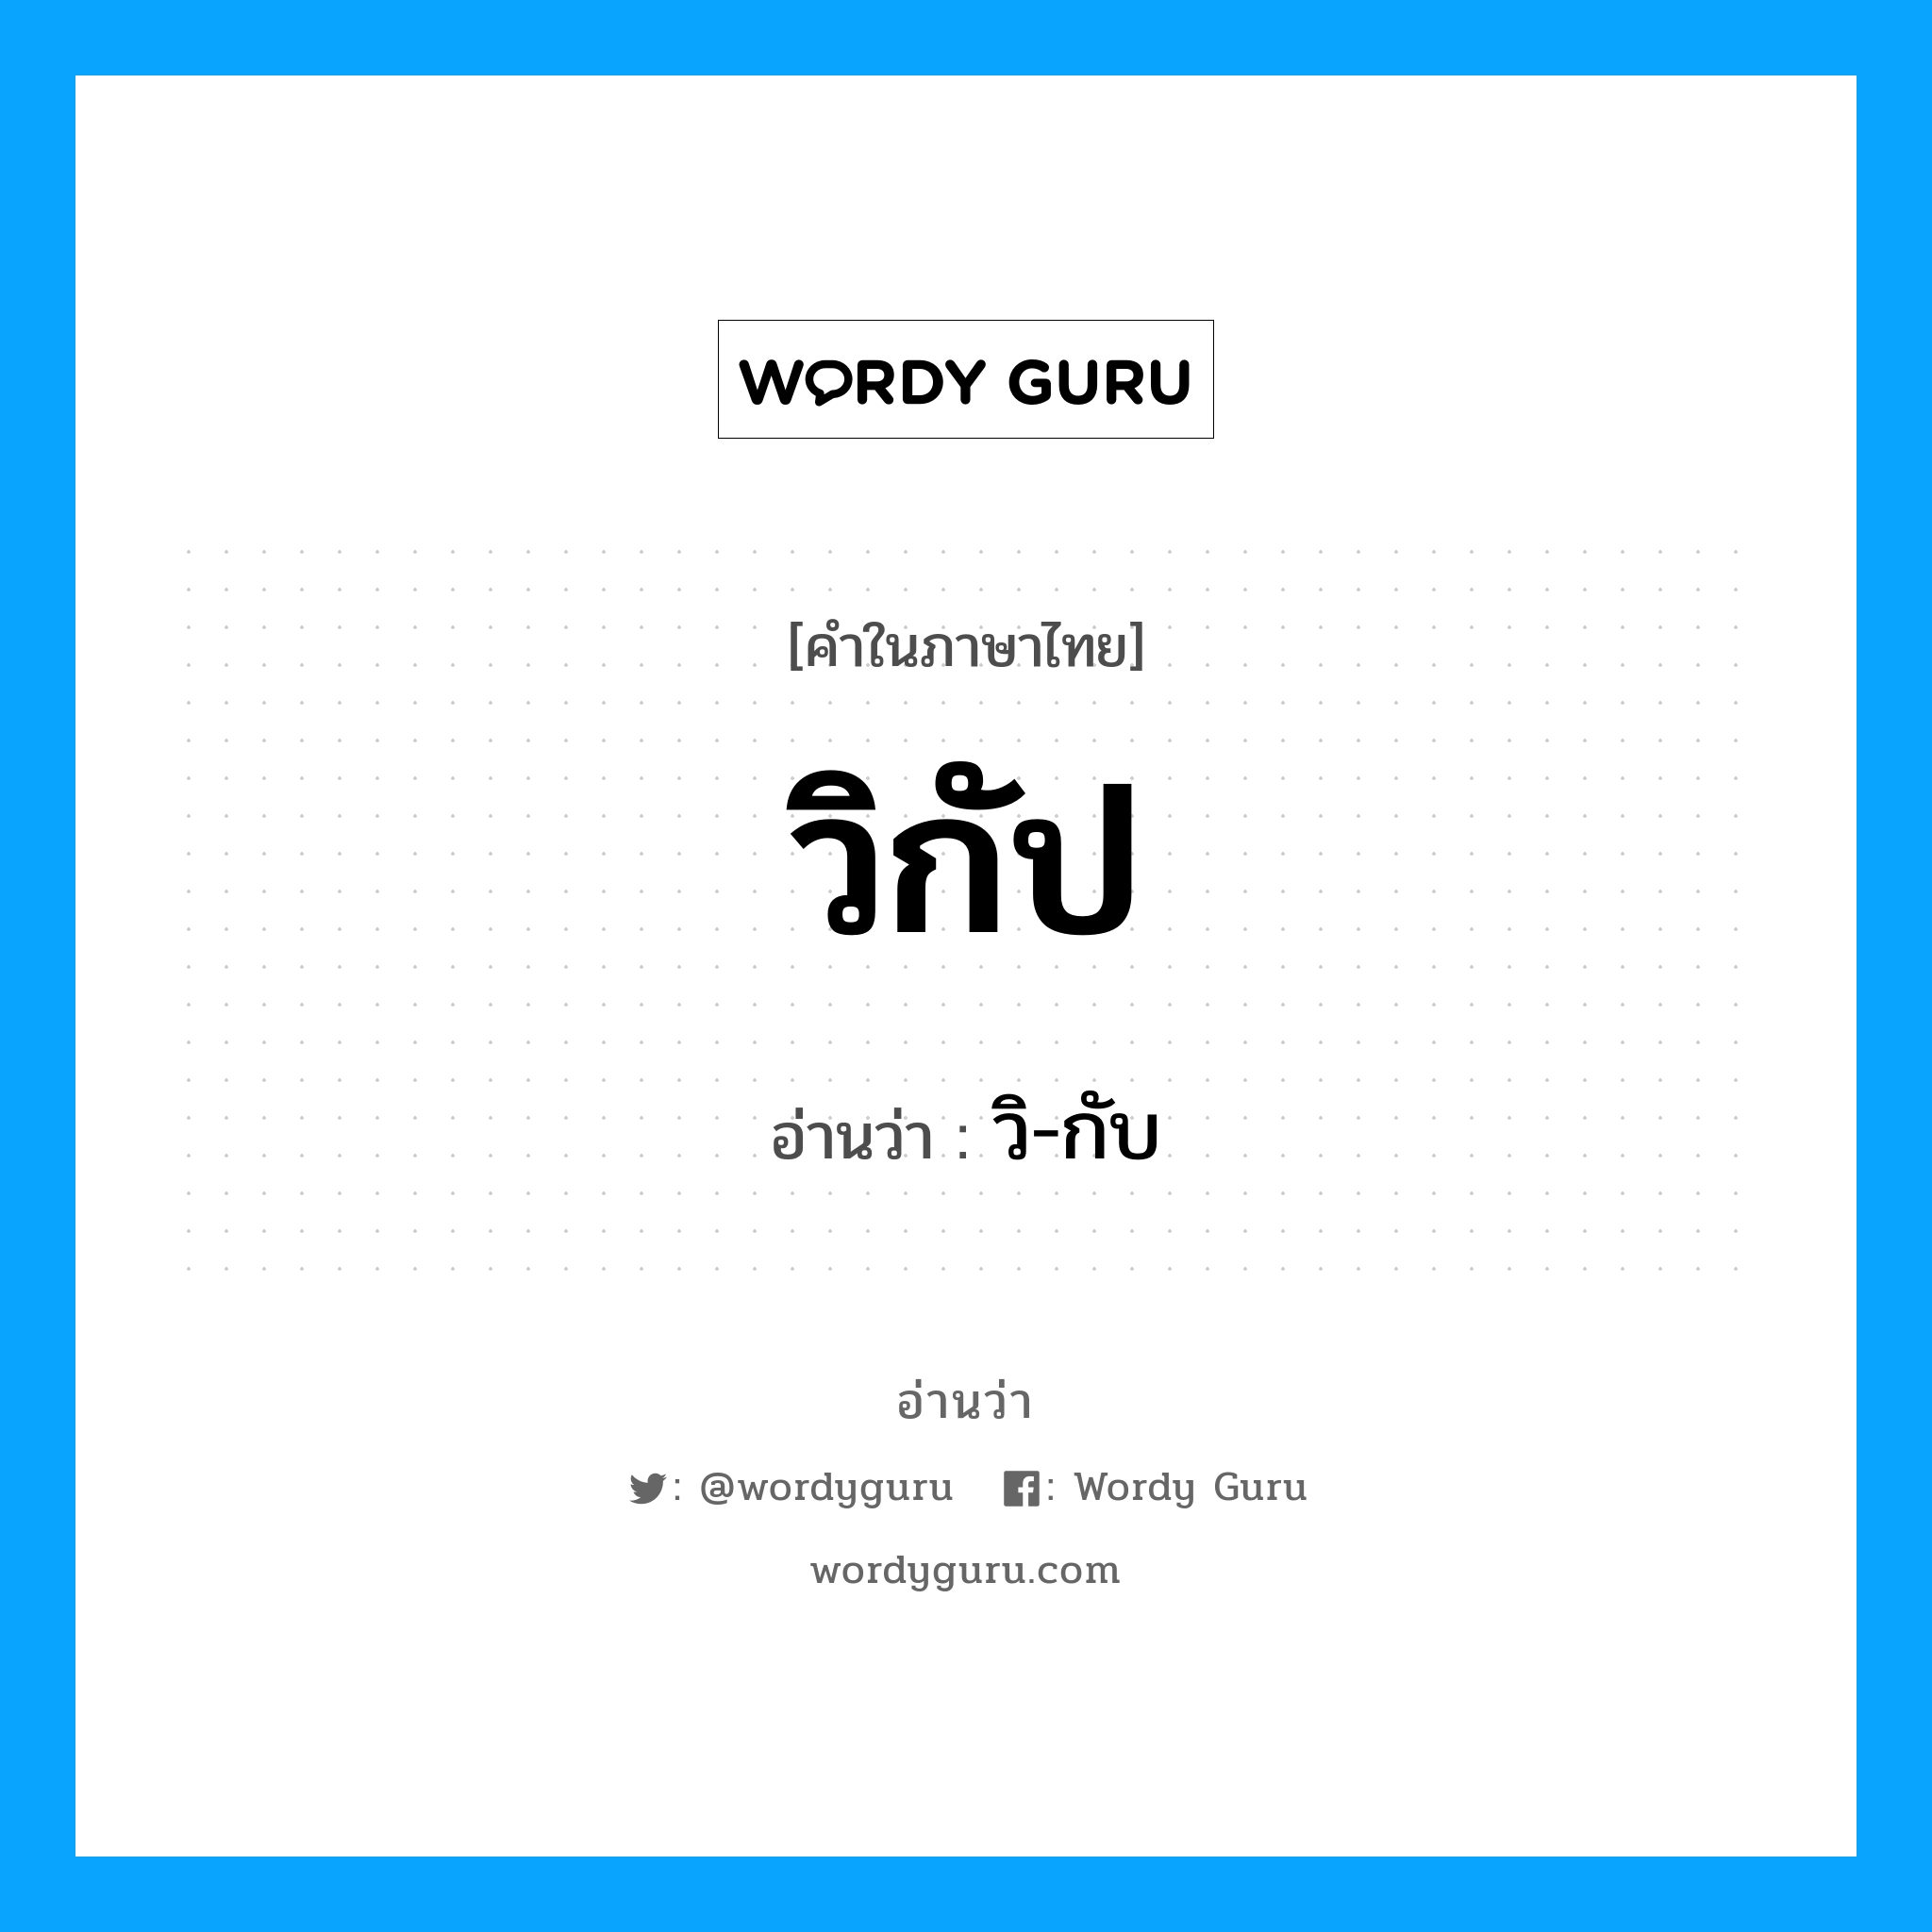 วิ-กับ เป็นคำอ่านของคำไหน?, คำในภาษาไทย วิ-กับ อ่านว่า วิกัป